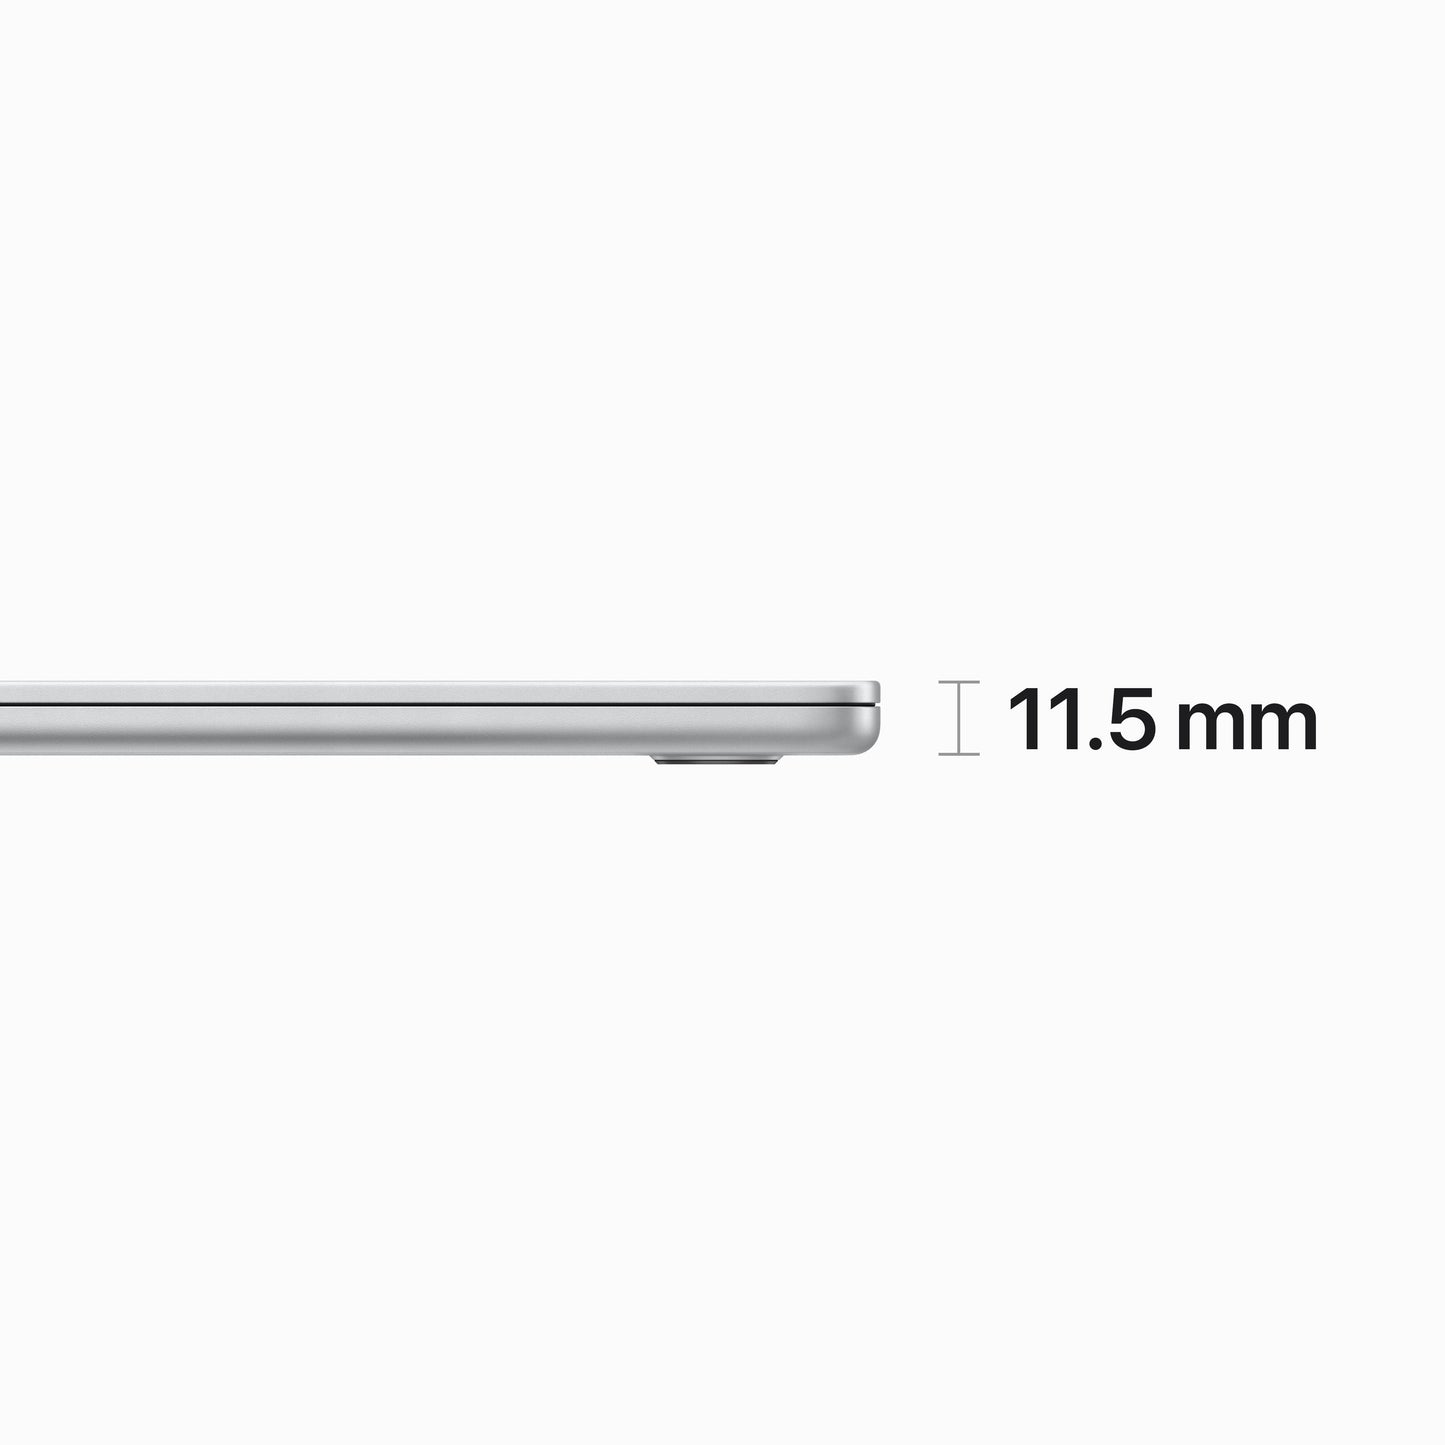 MacBook Air مقاس 15 انش: شريحة Apple M2 مع وحدة معالجة مركزية 8 نوى ووحدة معالجة رسومات 10 نوى، 256 جيجابايت SSD - فضي